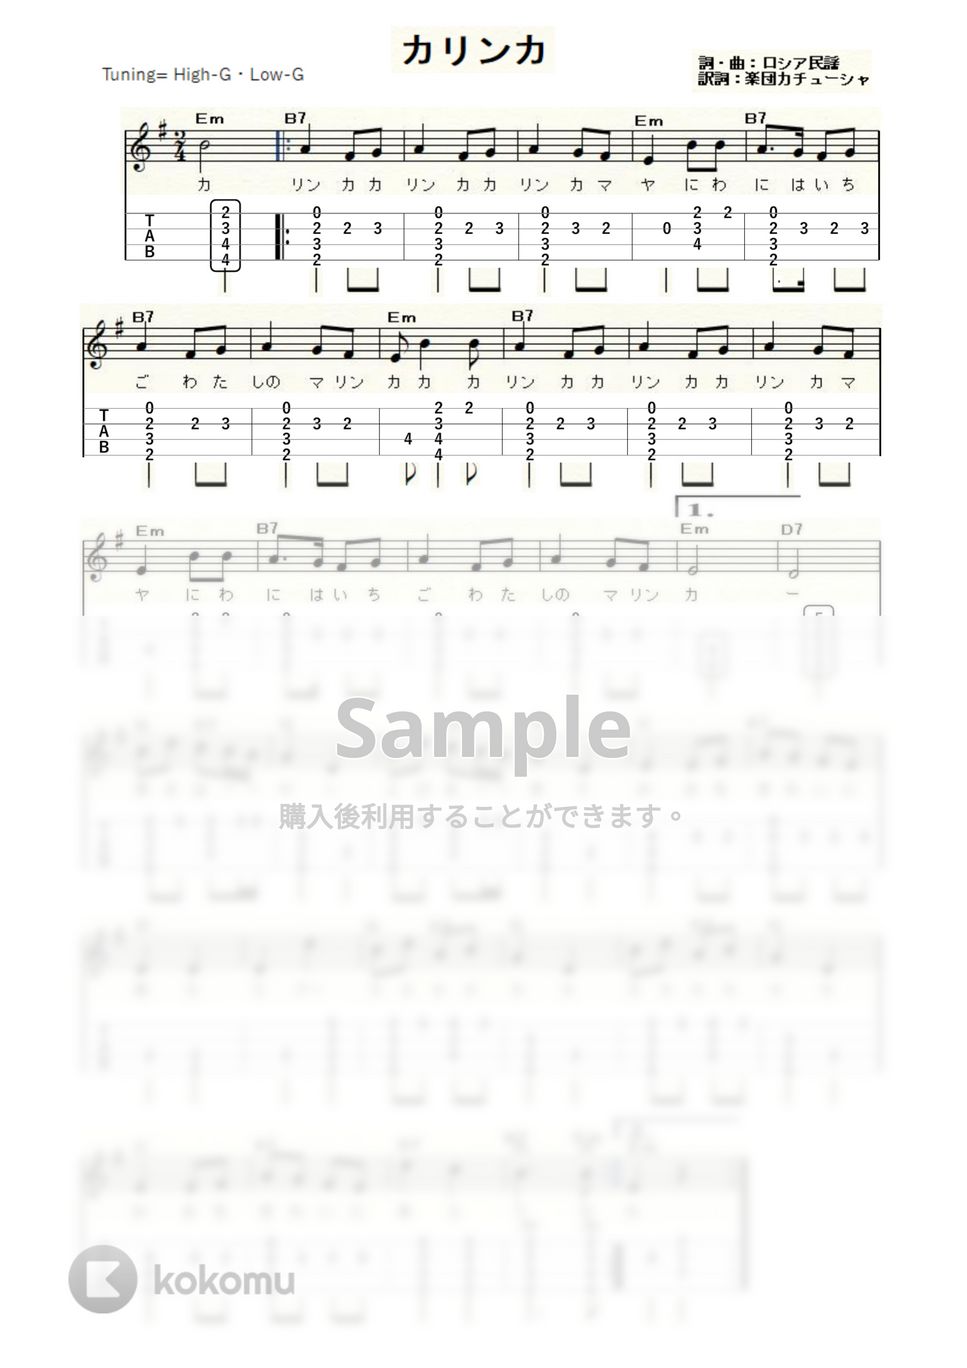 カリンカ (ｳｸﾚﾚｿﾛ / High-G・Low-G / 初級～中級) by ukulelepapa